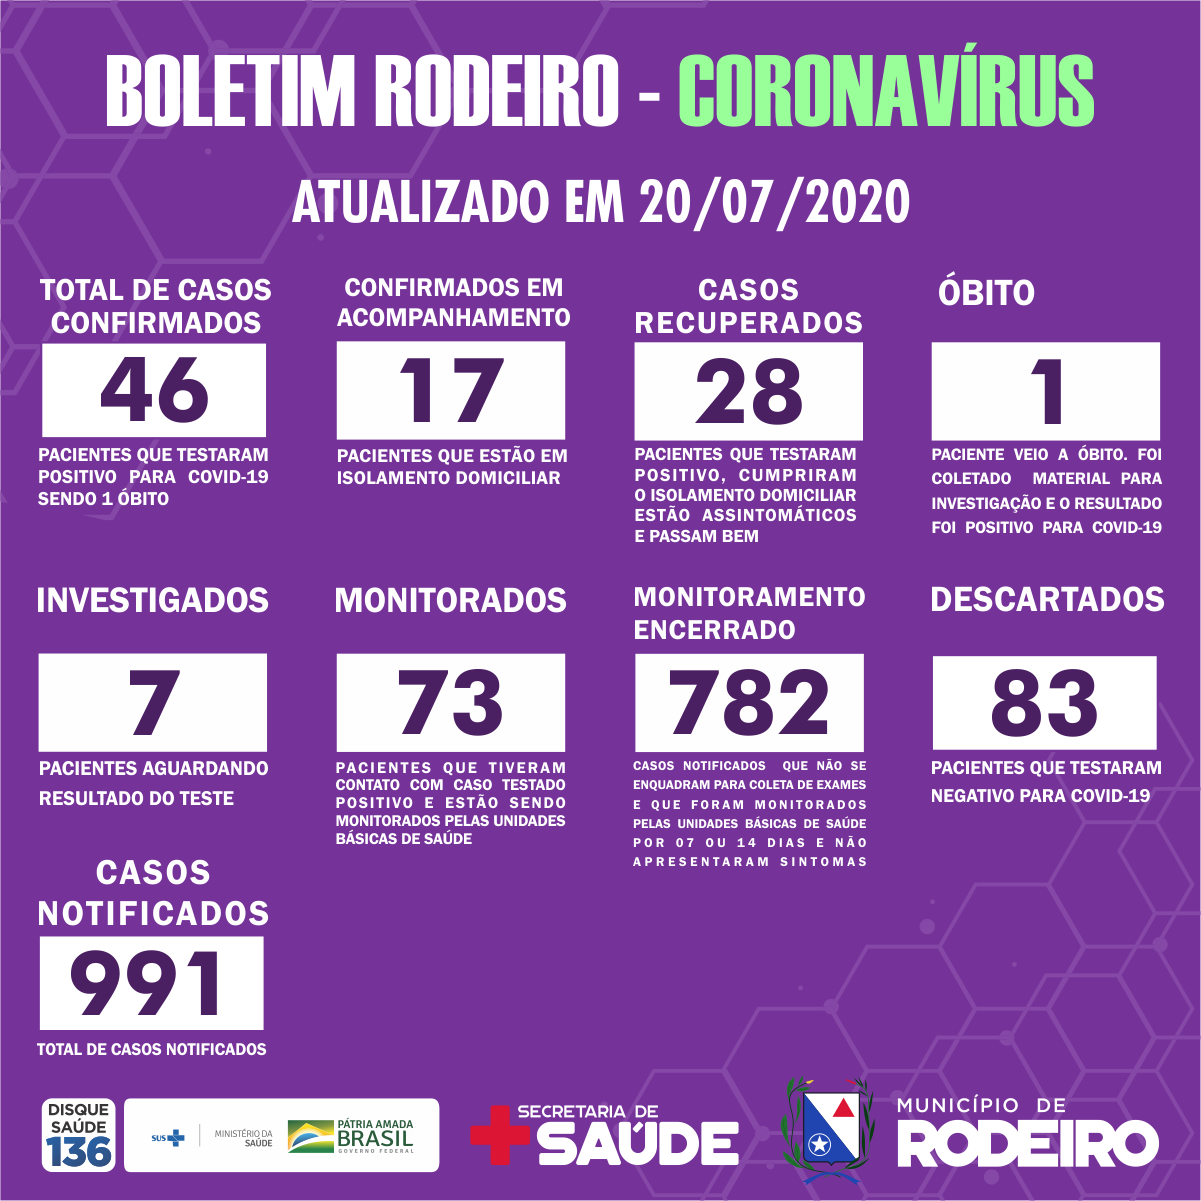 Boletim epidemiológico do Município de Rodeiro coronavírus, atualizado em 20/07/2020